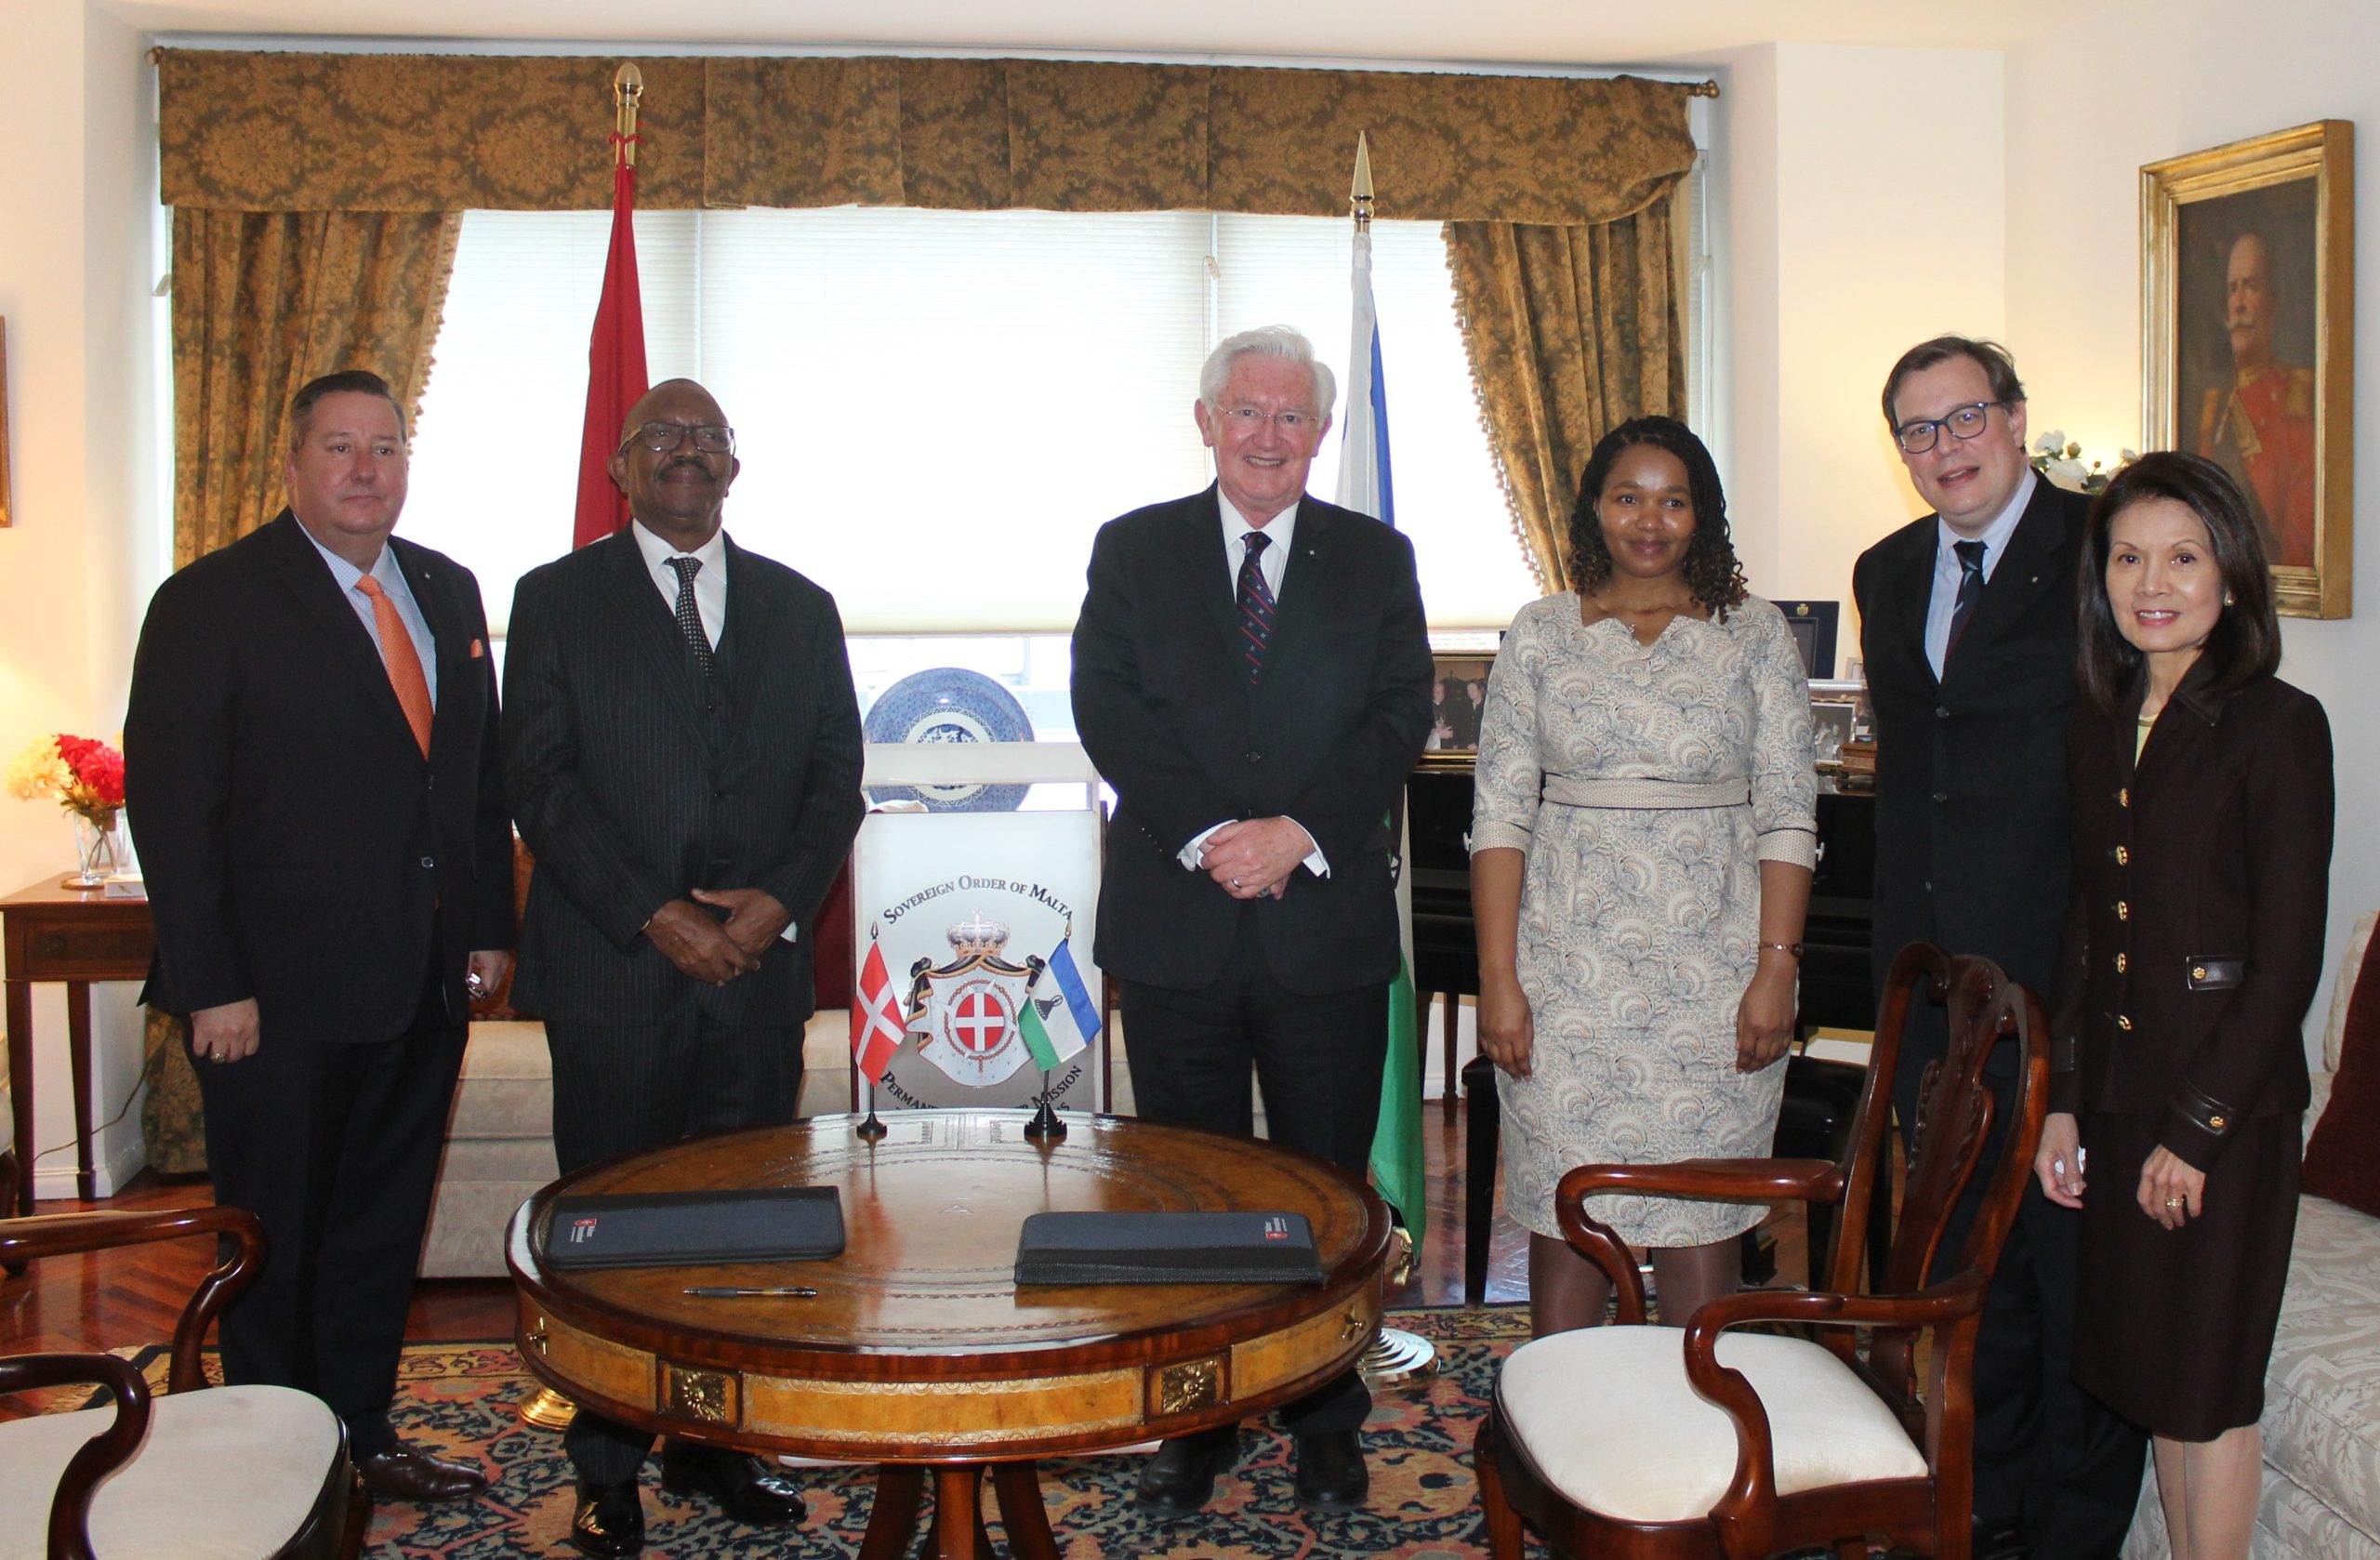 La mission de l’Ordre de Malte auprès des Nations Unies à New-York annonce l’ouverture de relations diplomatiques avec le Royaume du Lesotho